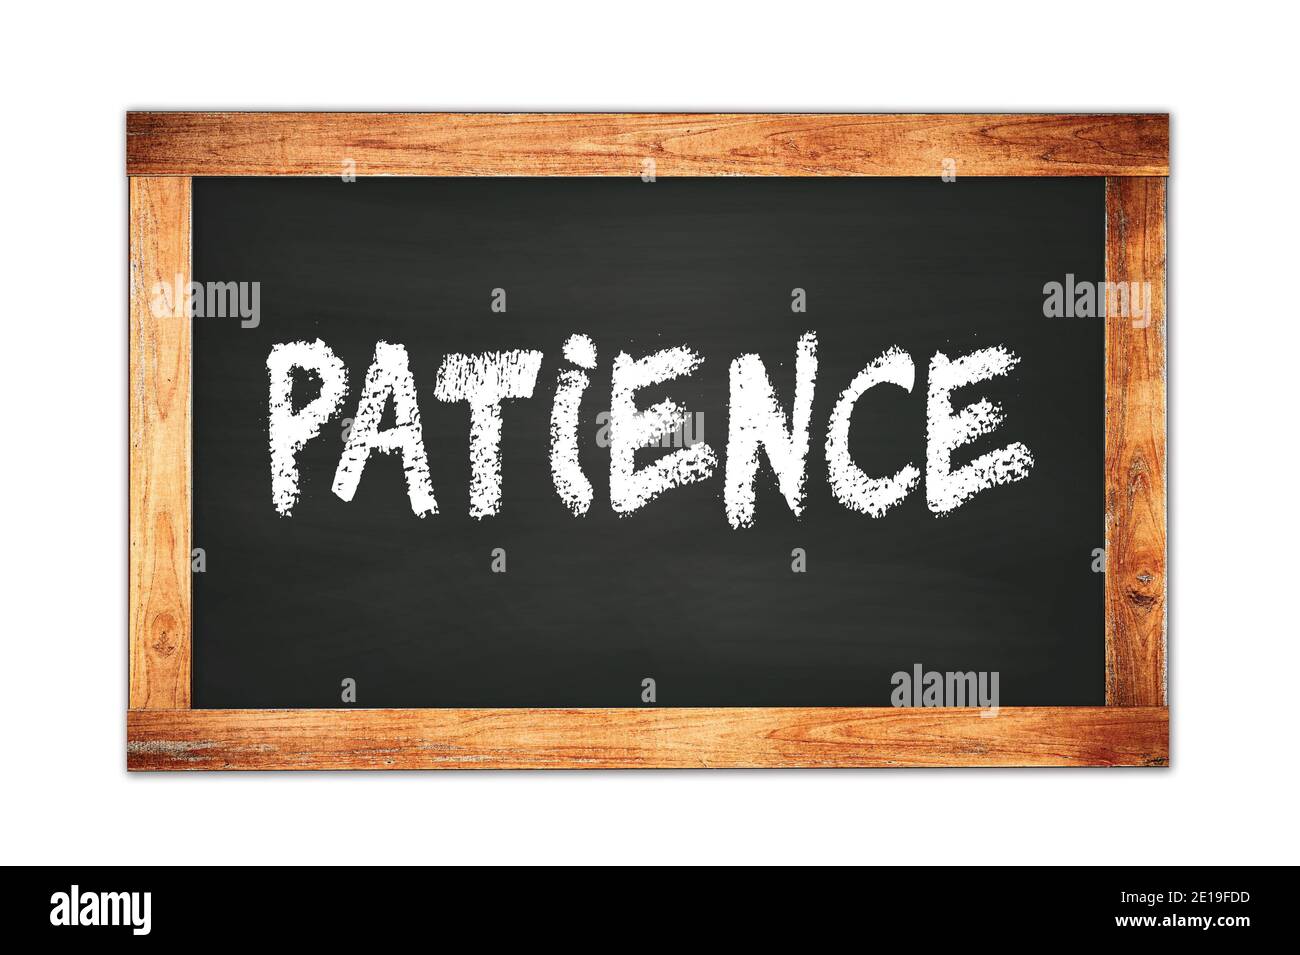 PATIENCE text written on black wooden frame school blackboard. Stock Photo